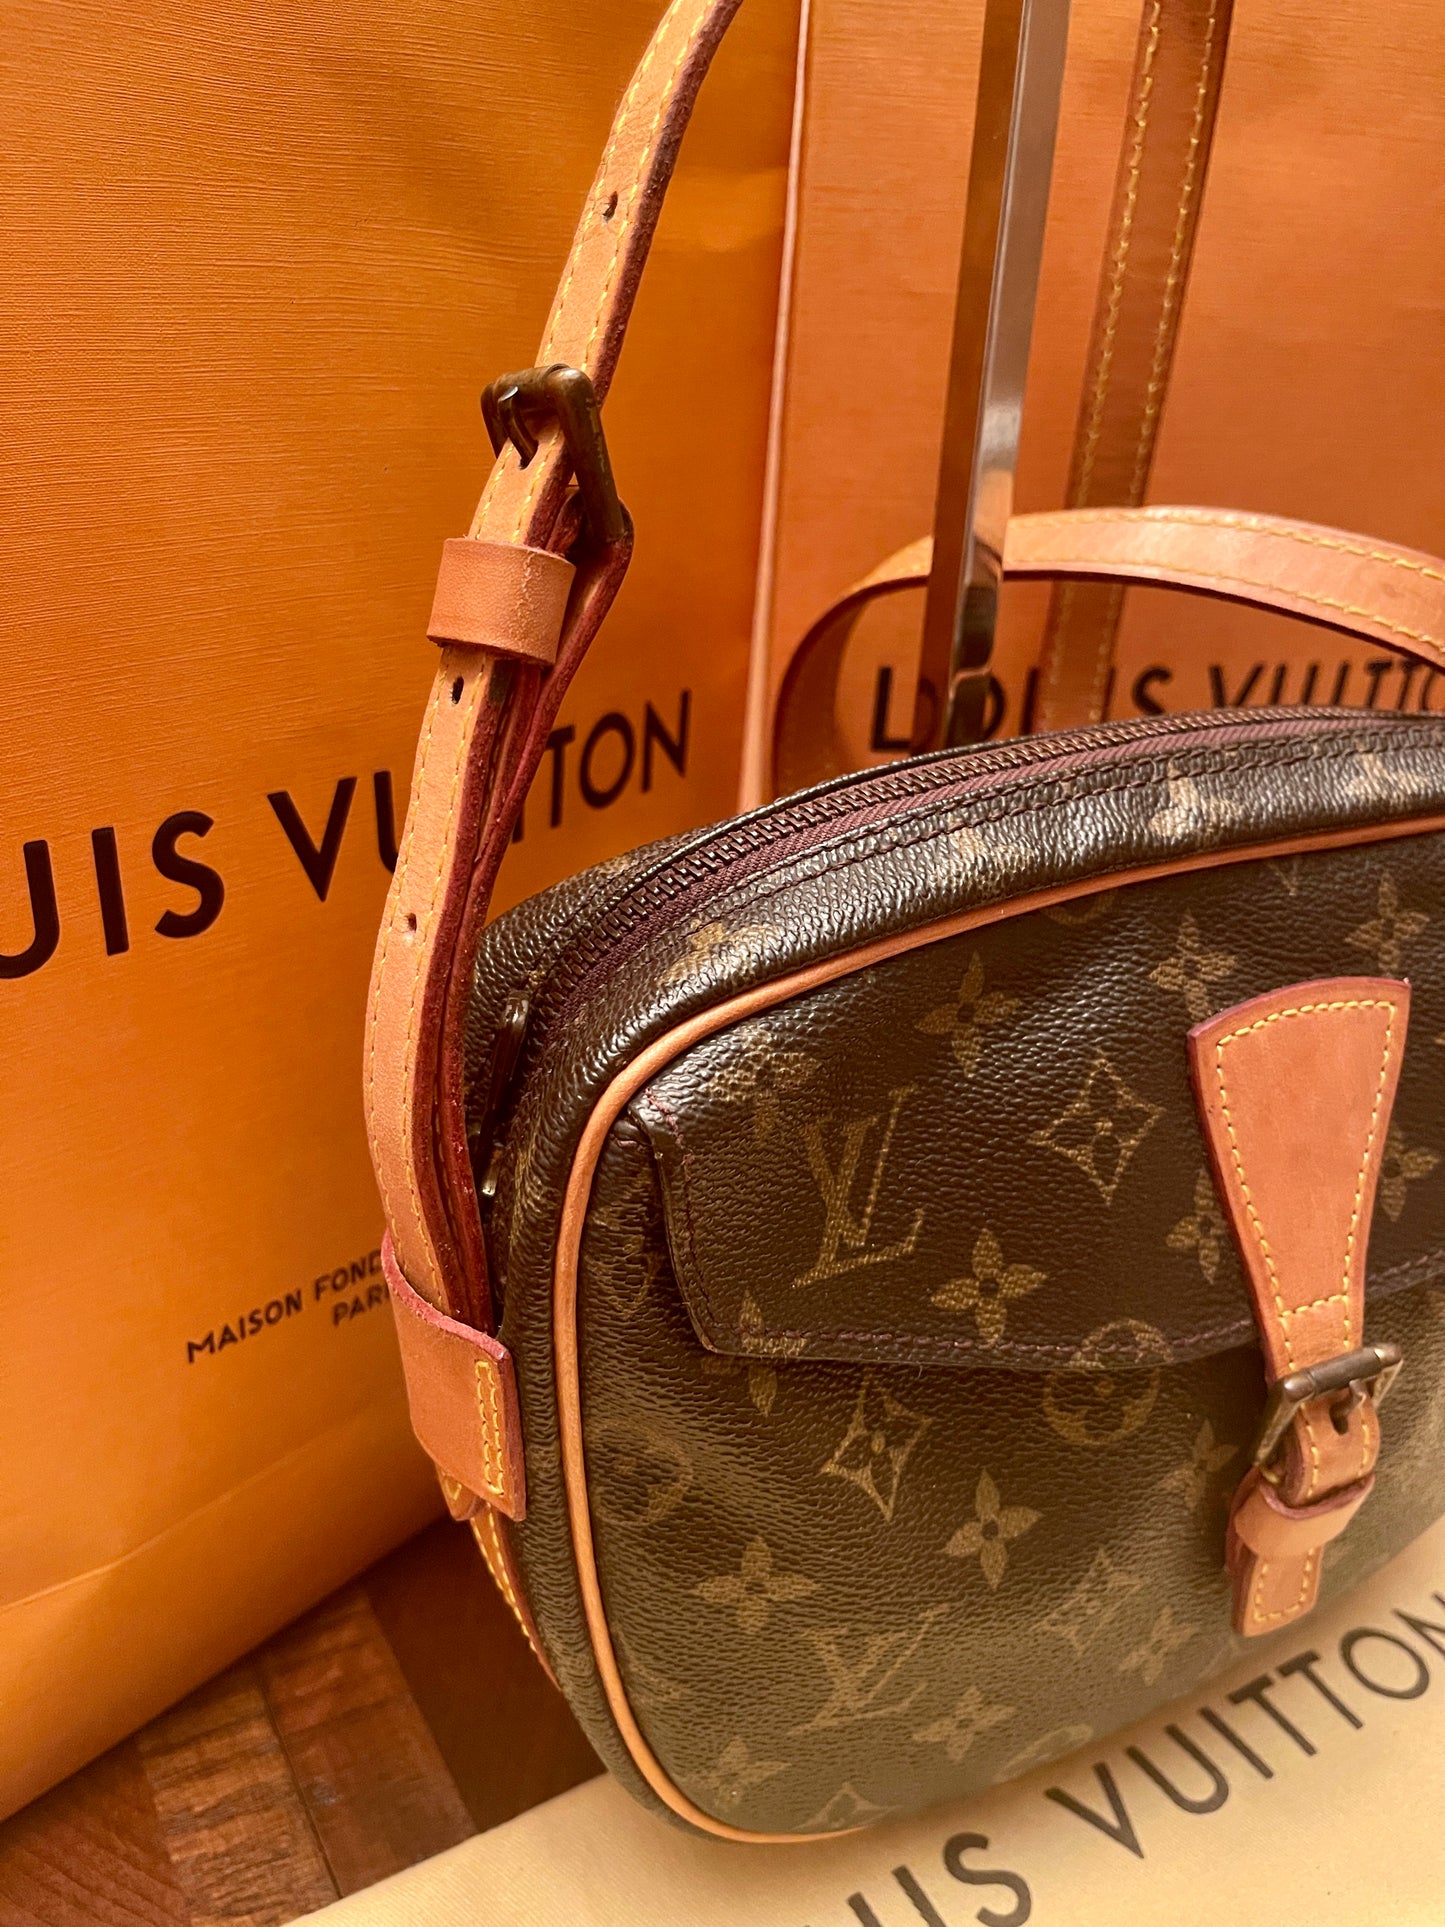 LOUIS VUITTON Jeune Fille Cross Body Bag Vintage Very Good Condition -  Chelsea Vintage Couture